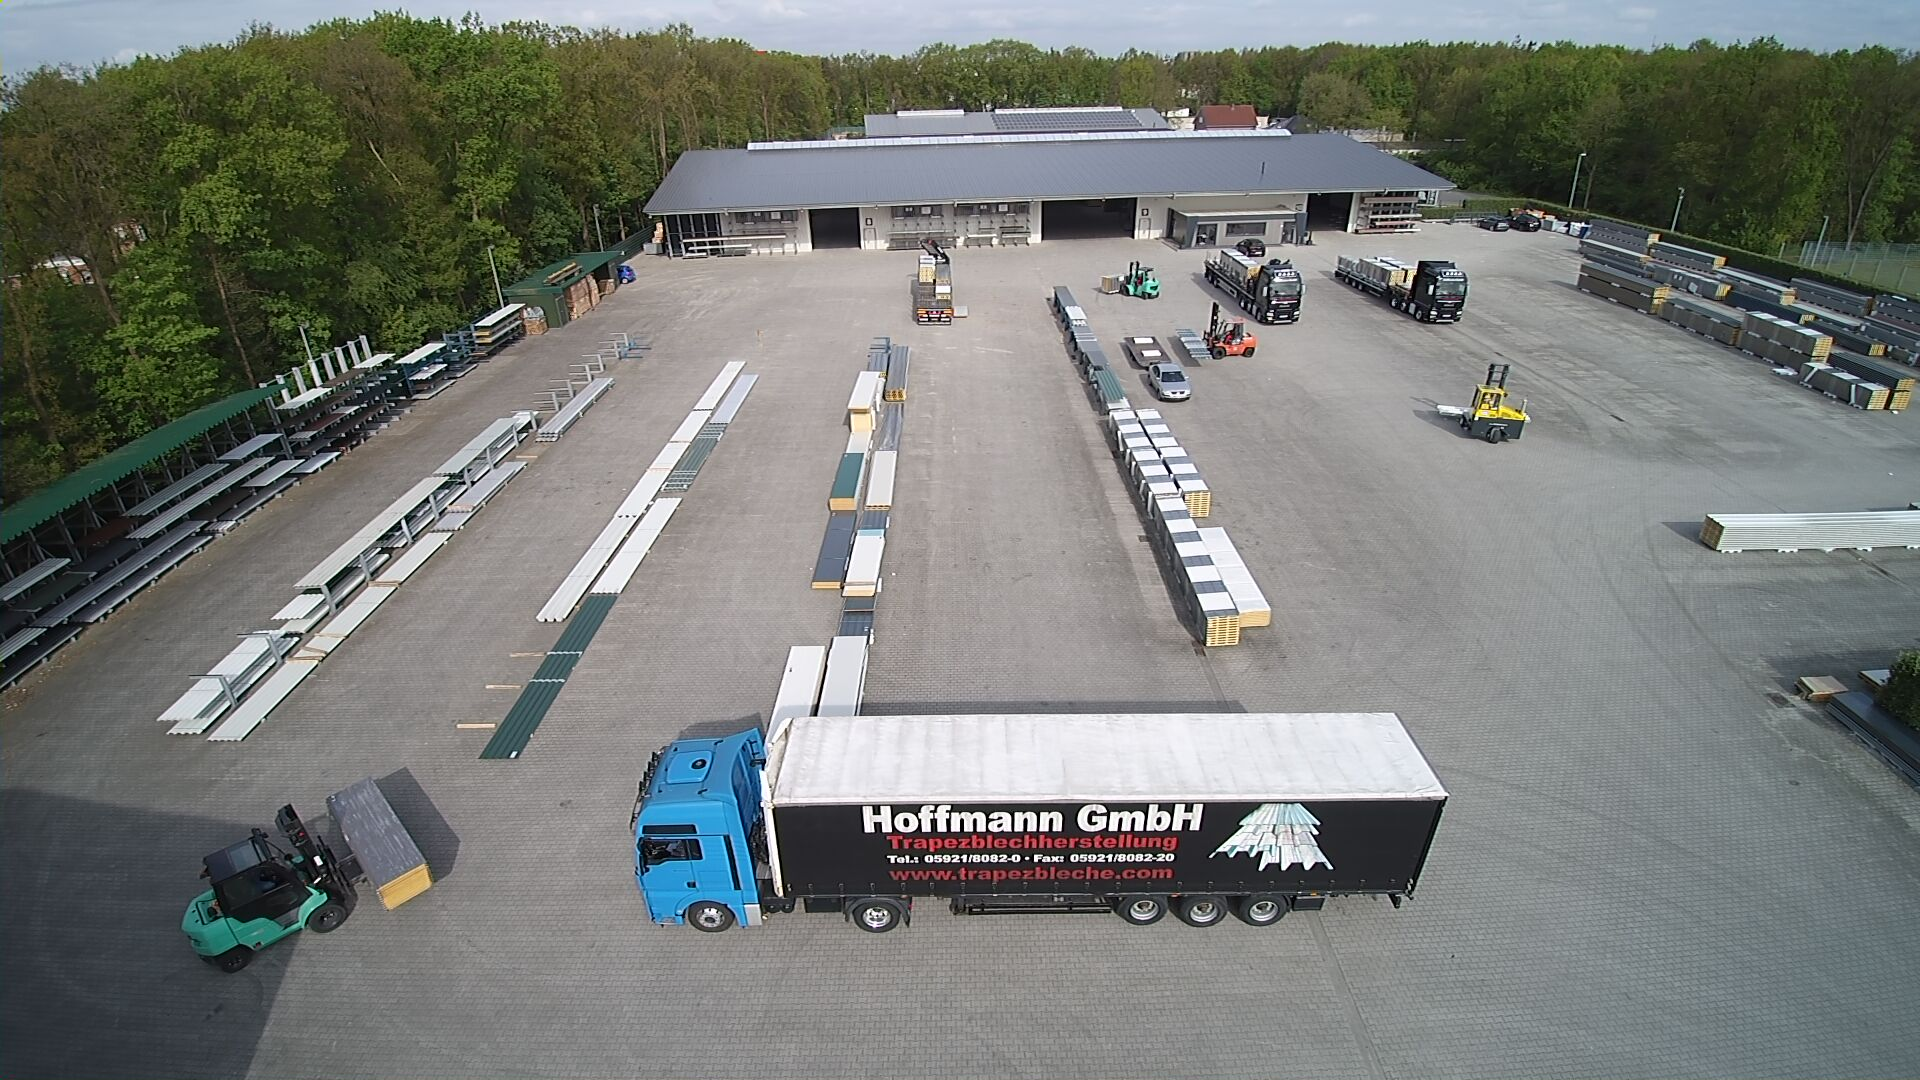 Hoffmann Trapezbleche GmbH, Bornestrasse 9-11 in Nordhorn